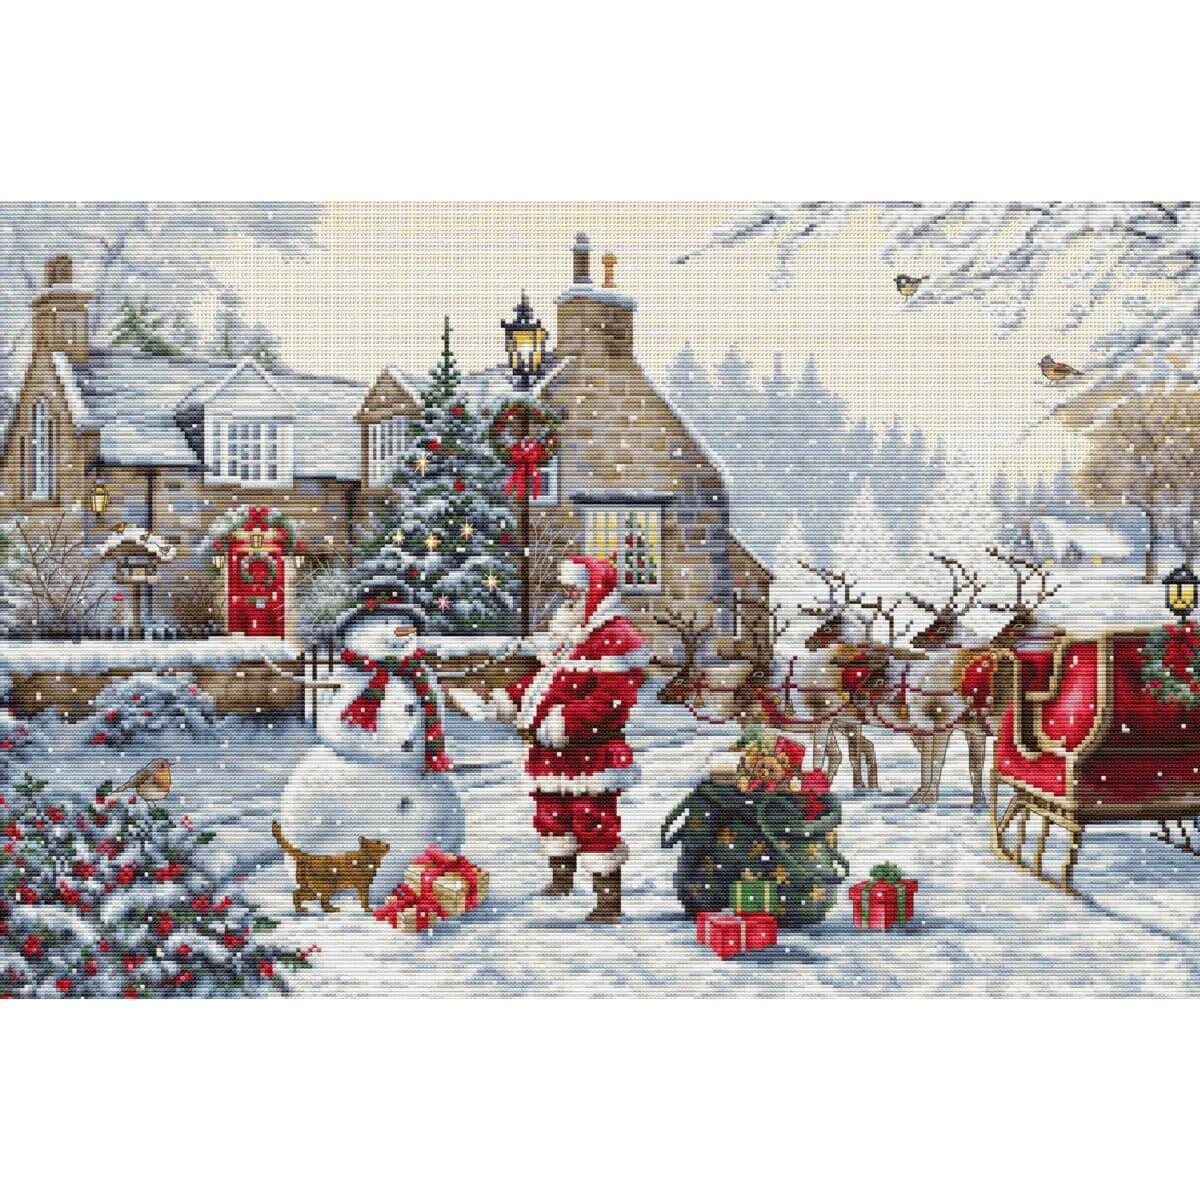 Una festiva escena invernal con Papá Noel, un...